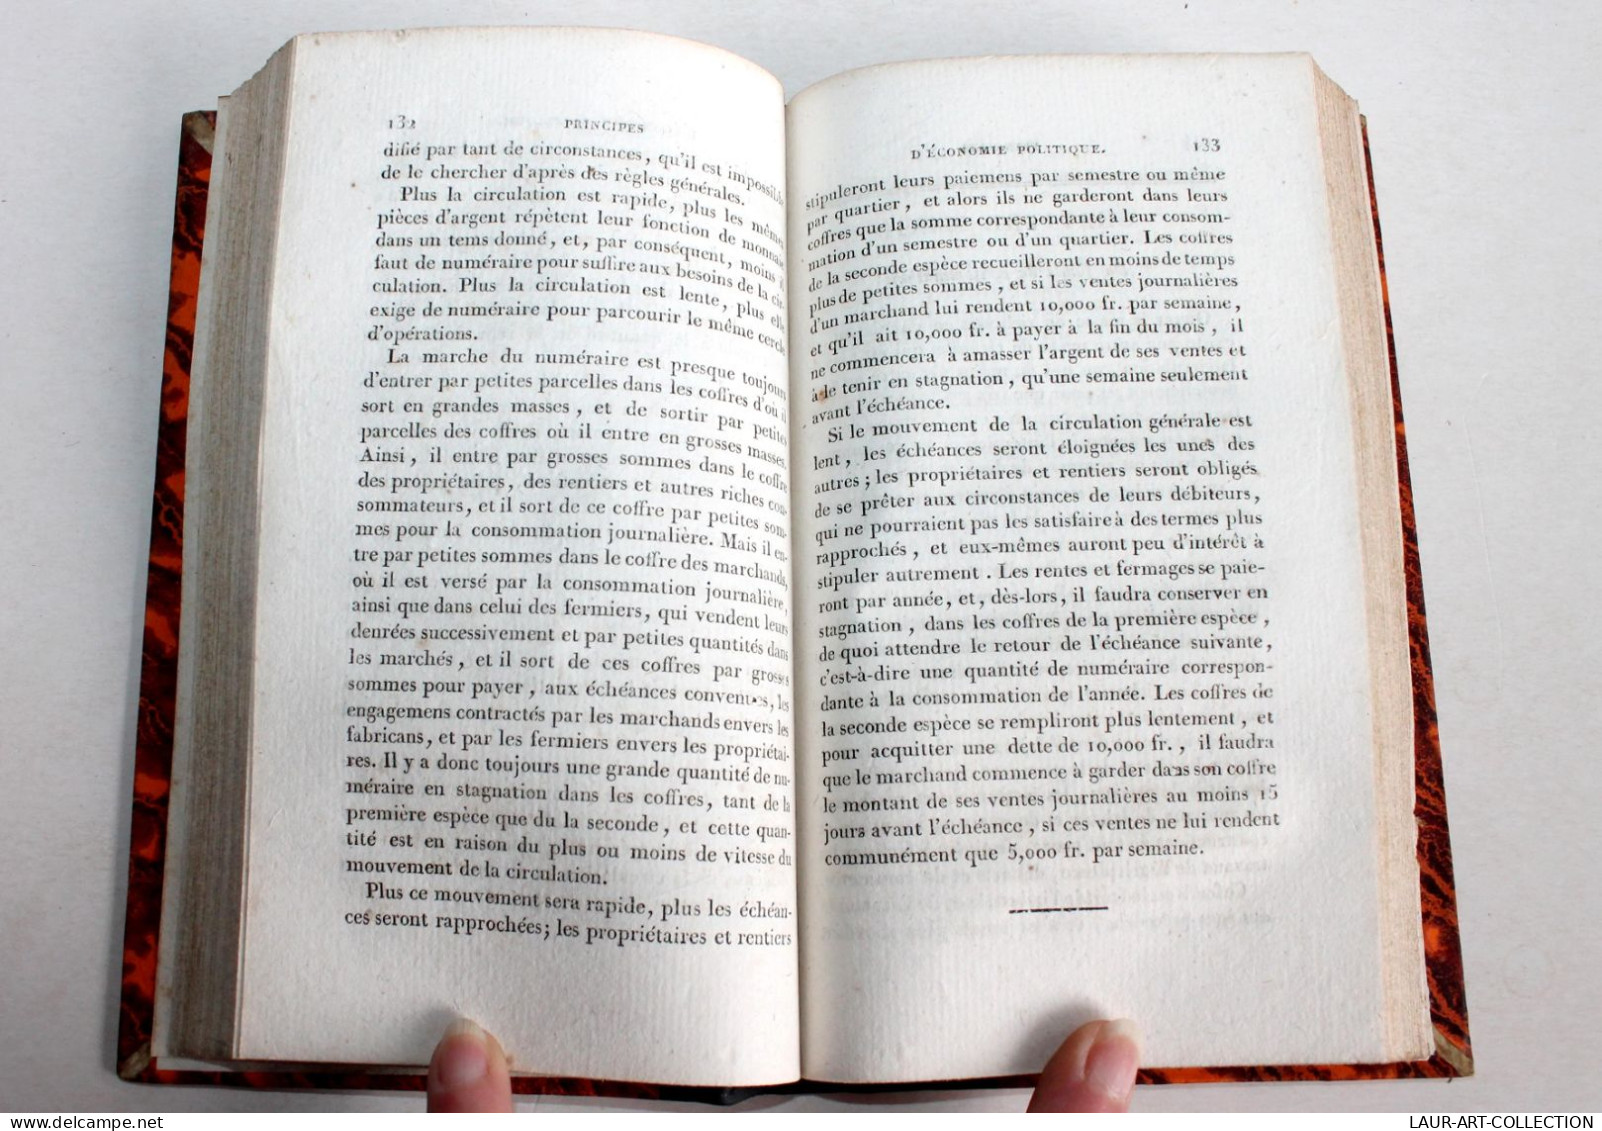 PRINCIPES D'ECONOMIE POLITIQUE Par A. DE CARRION NISAS FILS 1825 RAYMOND EDITEUR / ANCIEN LIVRE XIXe SIECLE (1803.60) - Economie